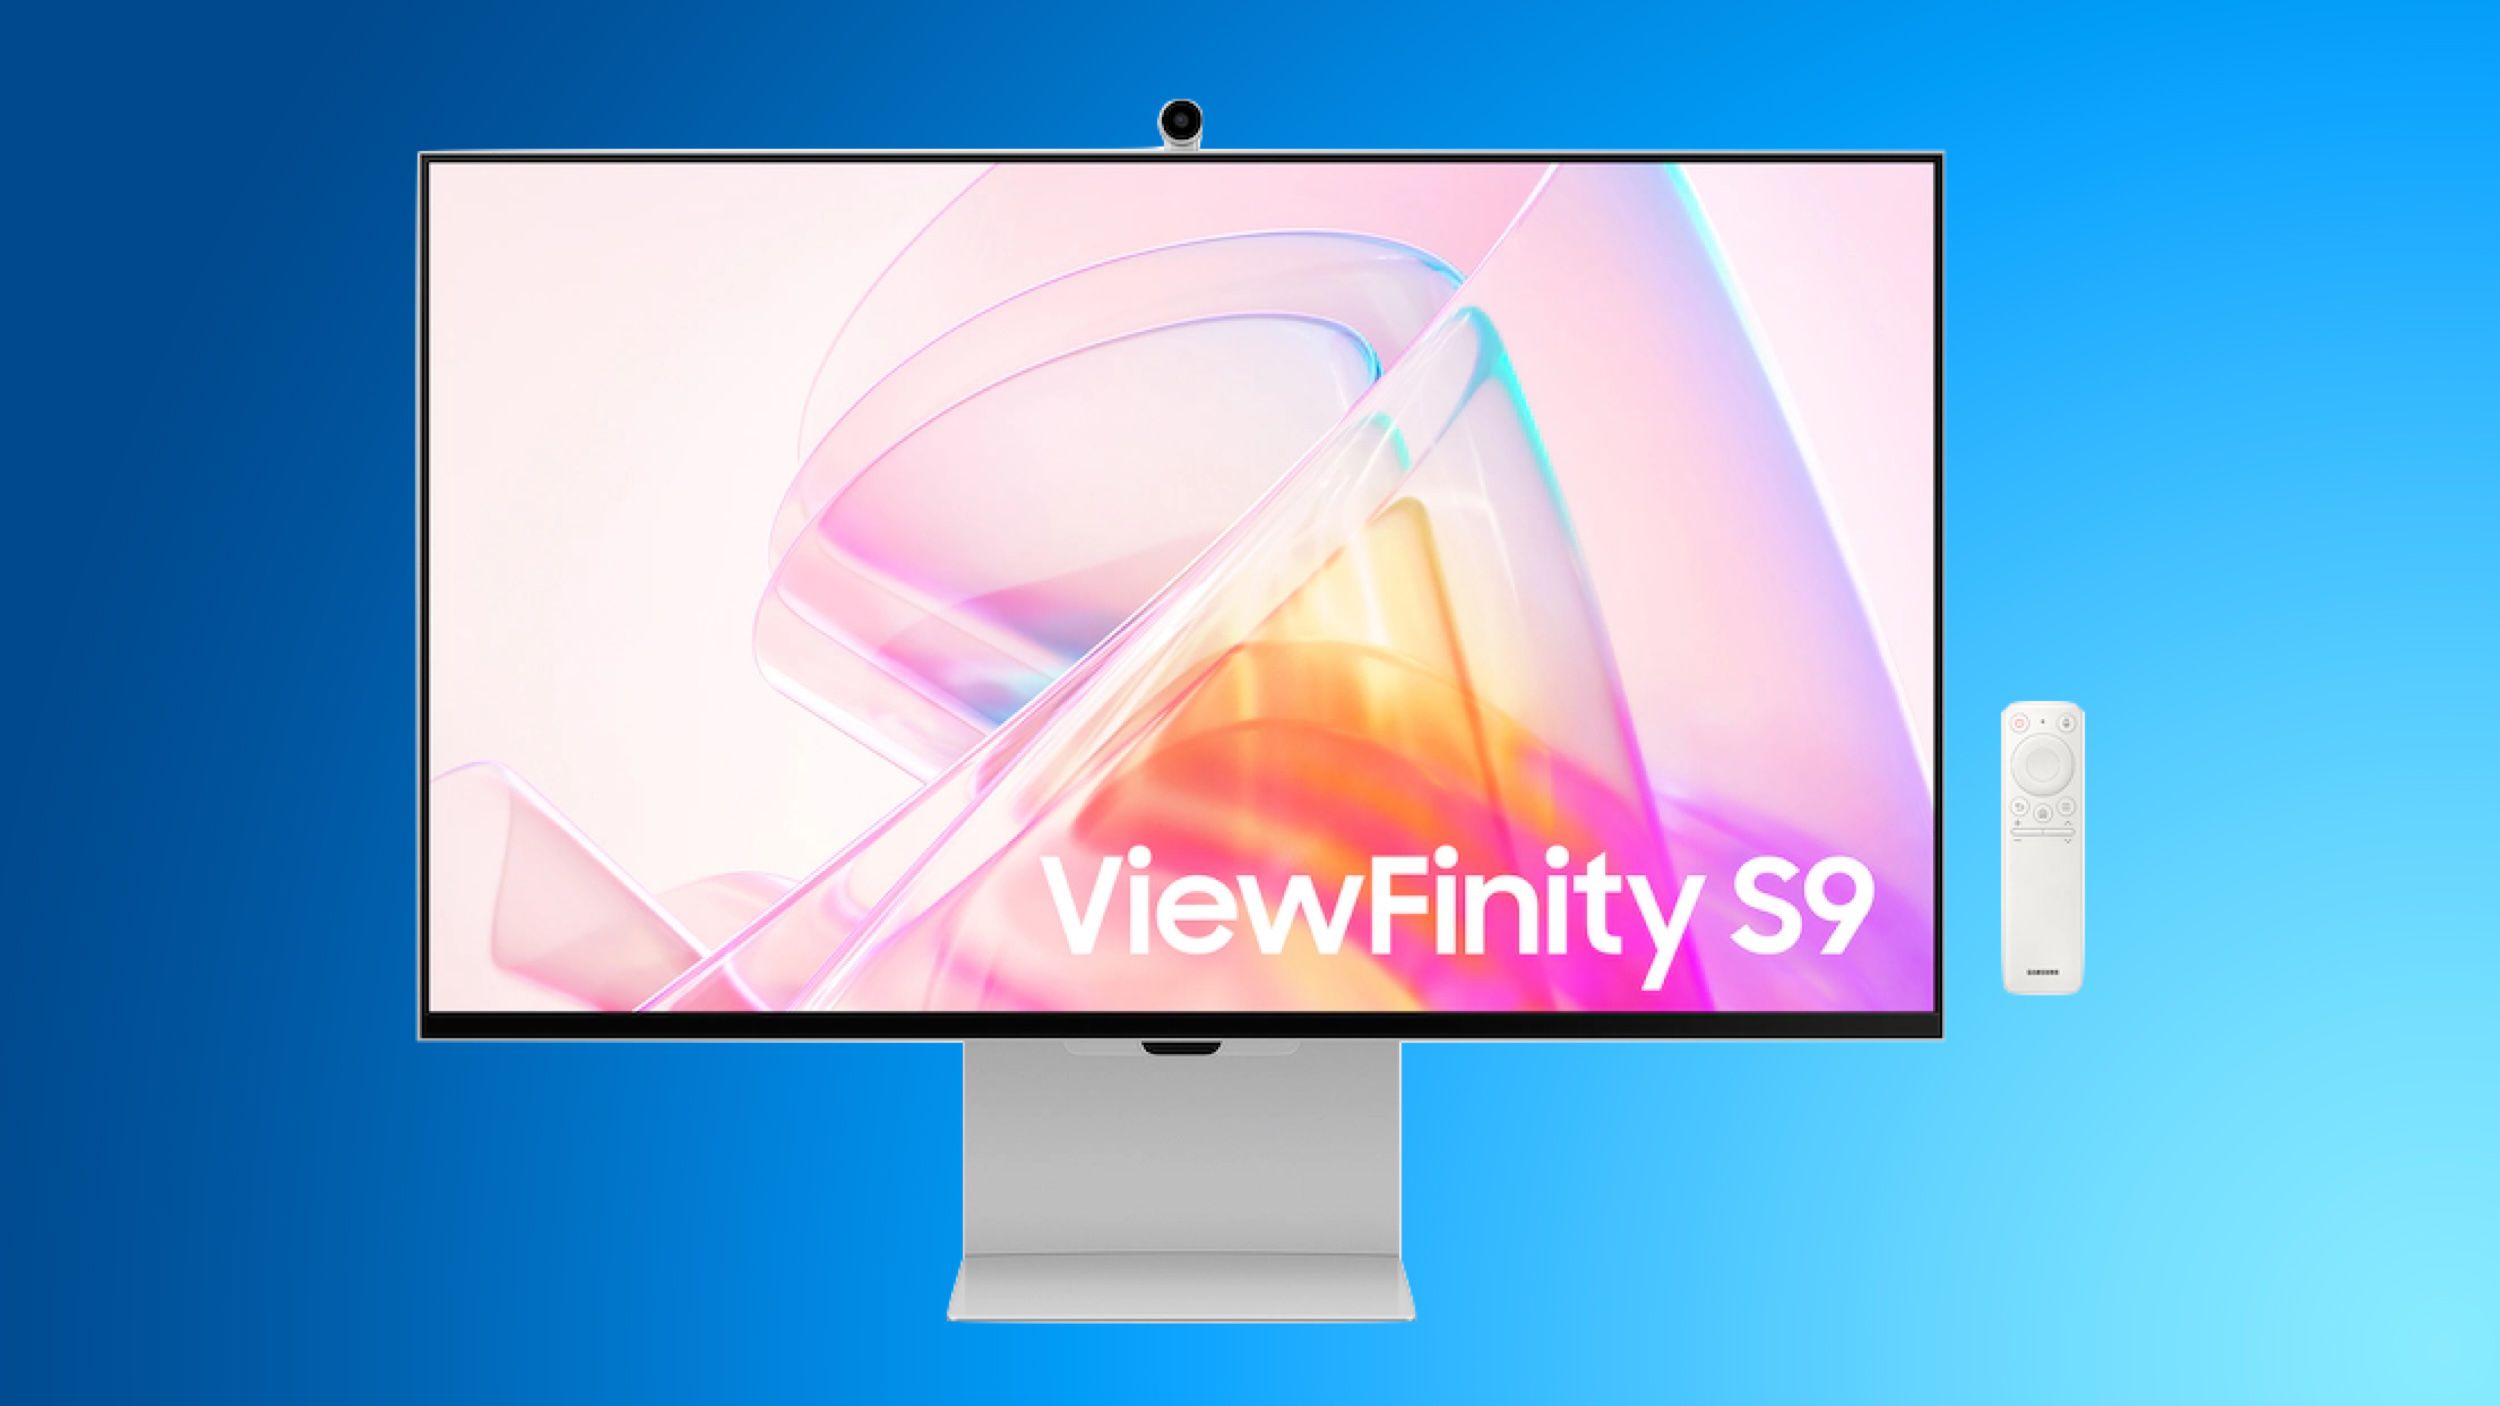 Découvrez la nouvelle vente de printemps de Samsung avec une réduction massive de 700 $ sur l'écran intelligent ViewFinity S9 5K et plus encore